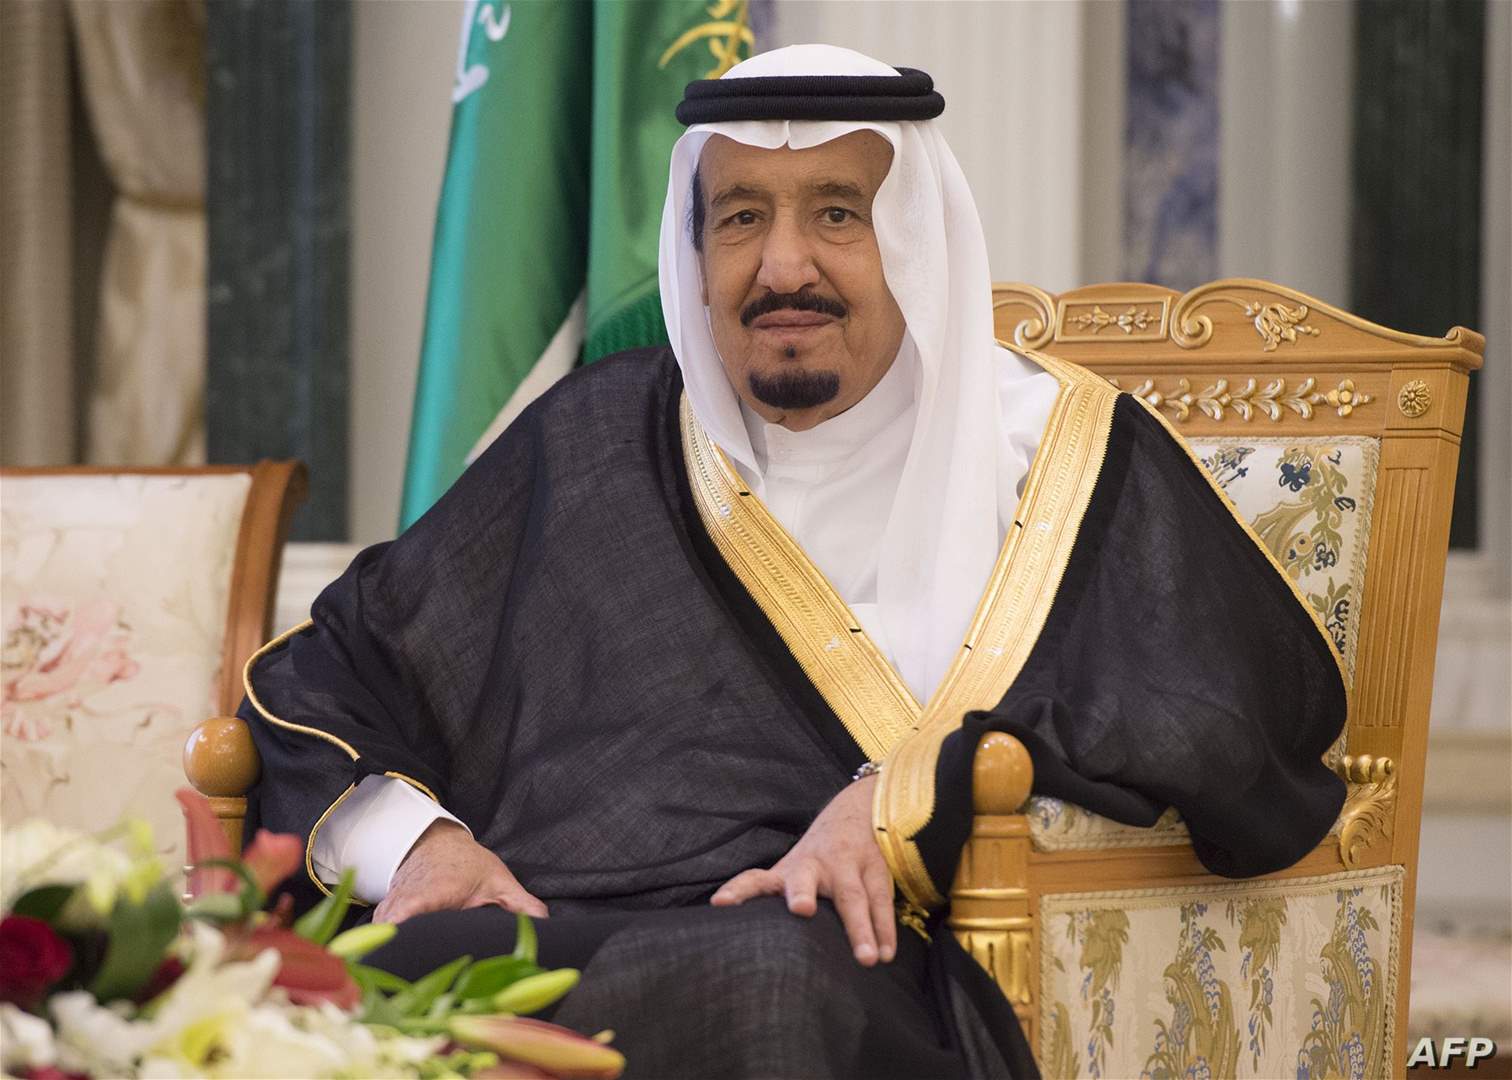 الملك السعودي سلمان بن عبد العزيز: الحوثيون يرفضون المبادرات السلمية لإنهاء الحرب